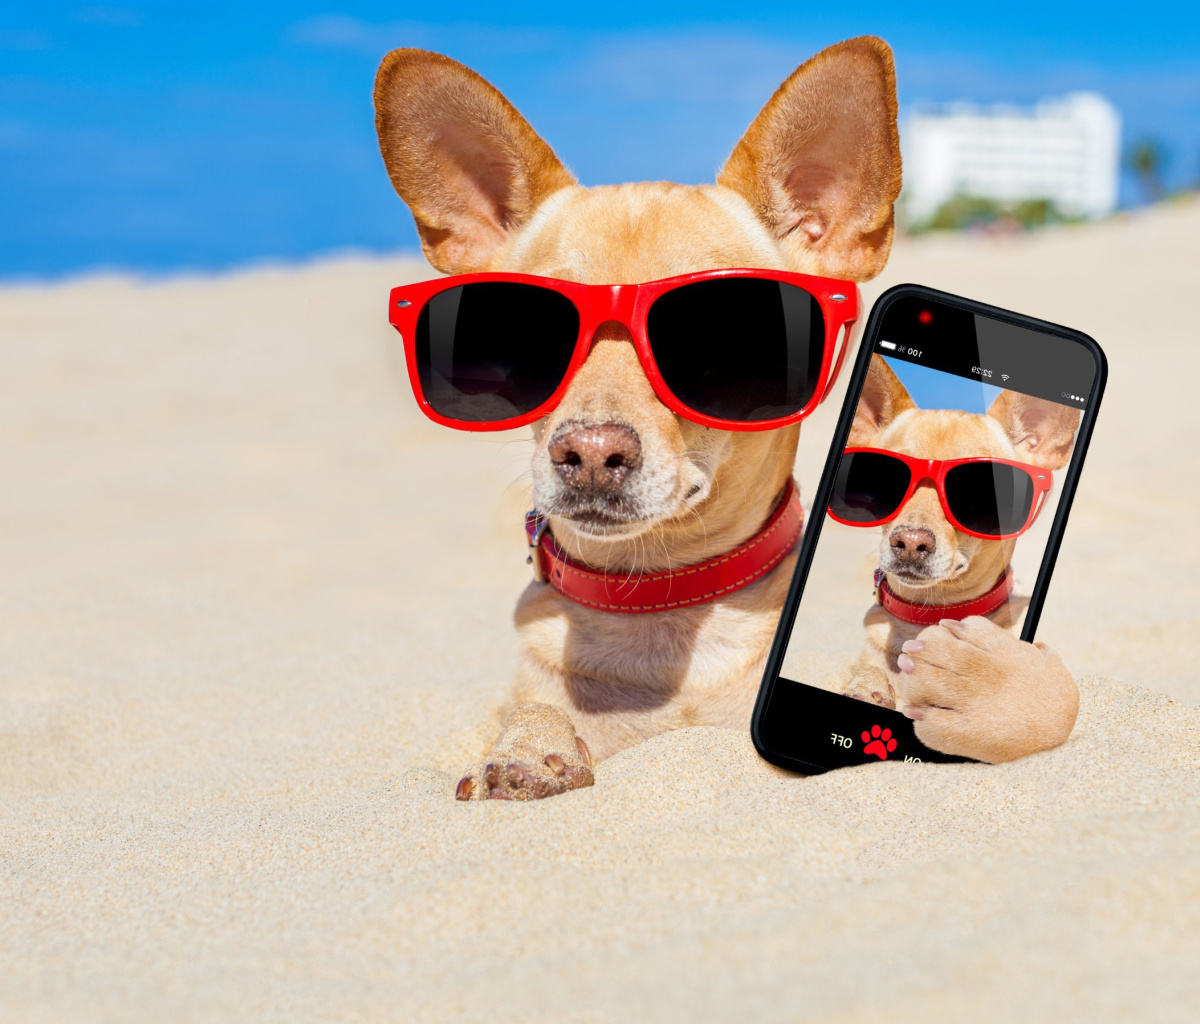 Обои Chihuahua with mobile phone 1200x1024